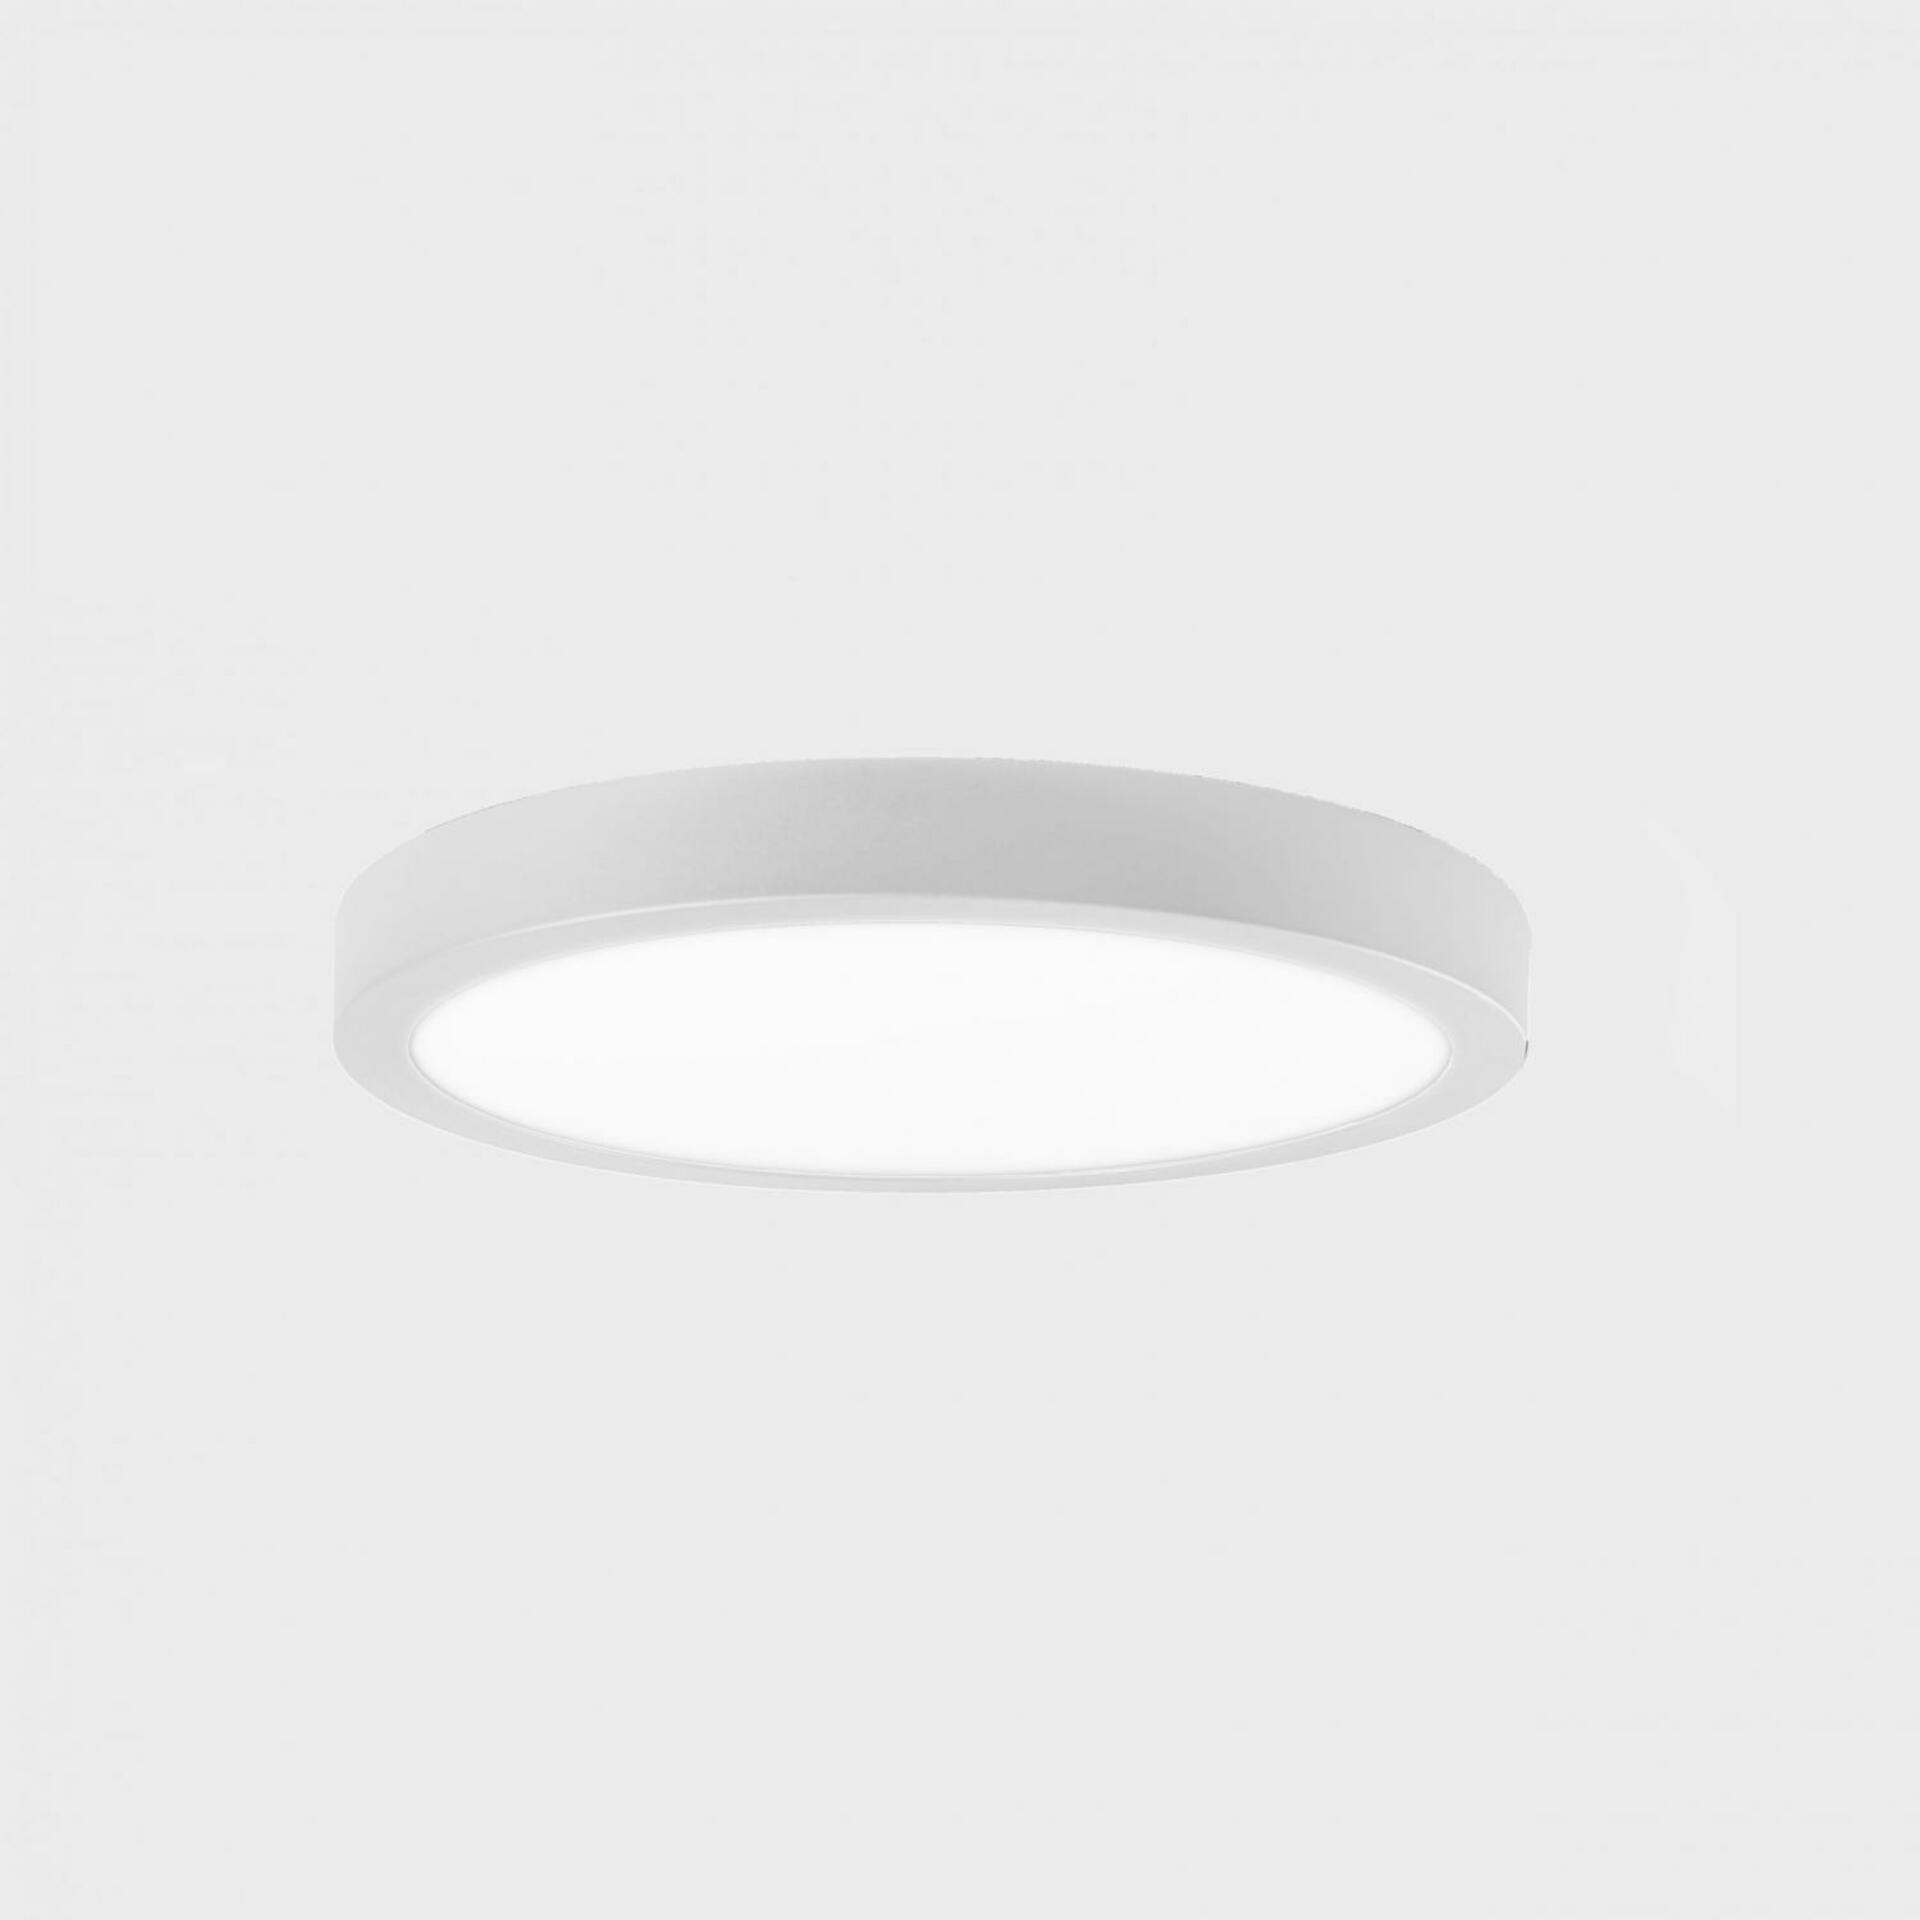 KOHL LIGHTING KOHL-Lighting DISC SLIM stropní svítidlo pr. 400 mm bílá 38 W CRI 80 3000K DALI